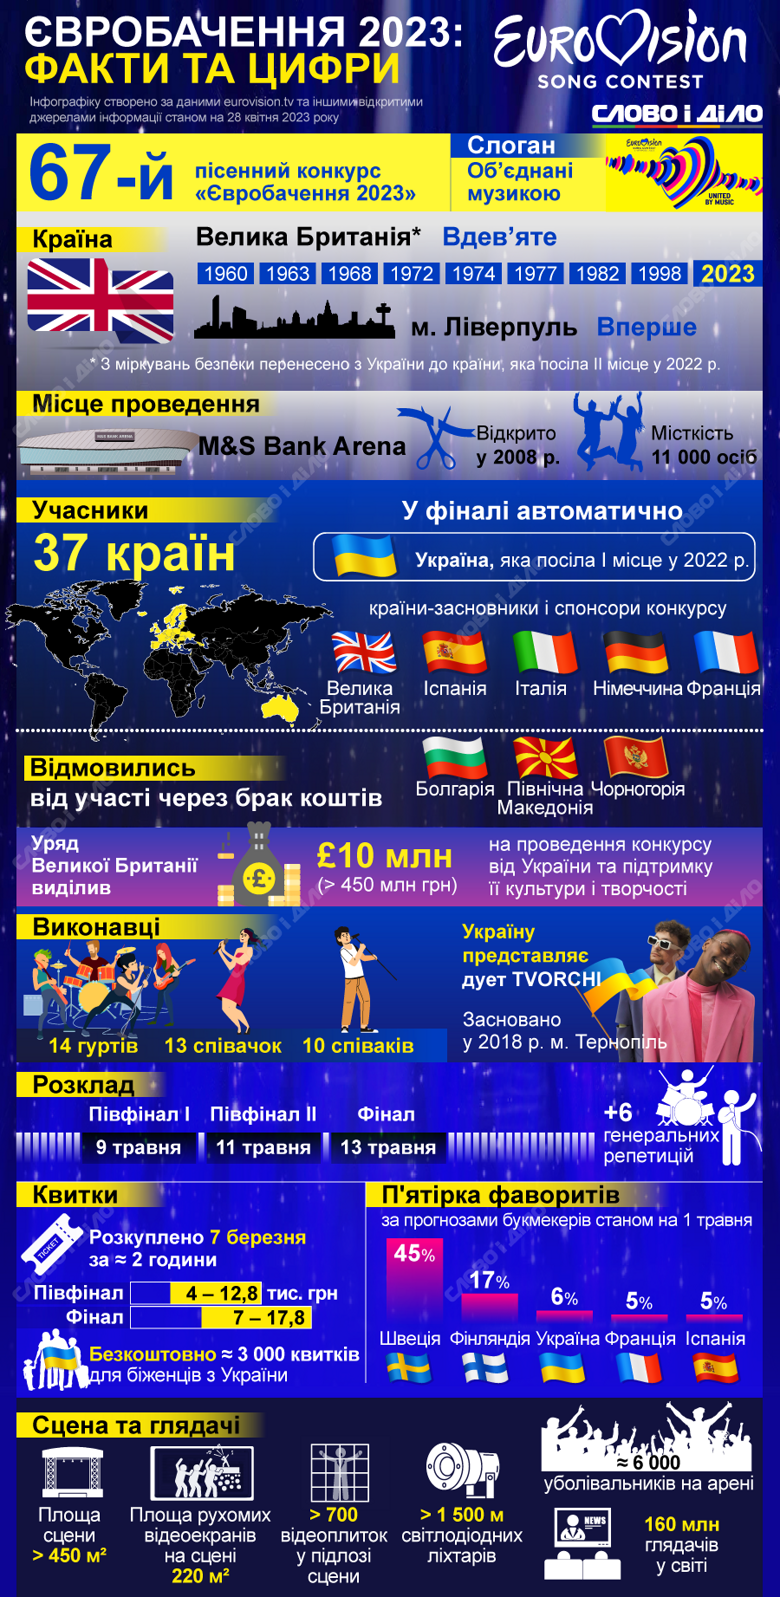 Все о Евровидении 2023 – когда и где будет проходить, список участников конкурса, прогнозы букмекеров, стоимость билетов.